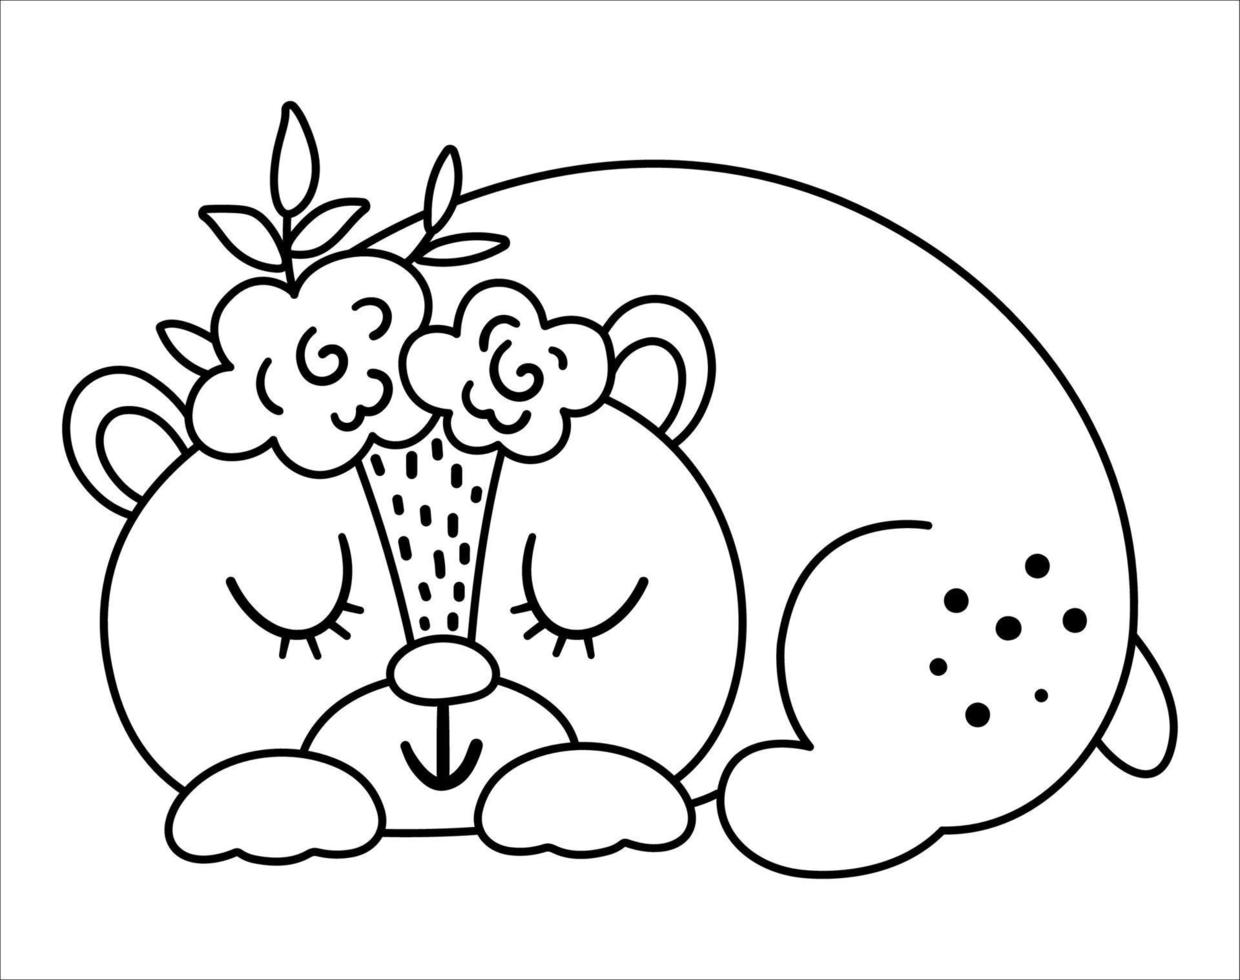 vector zwart-wit slapende beer met bloemen op het hoofd. schattig Boheemse stijl bos dierlijke lijn pictogram geïsoleerd op een witte achtergrond. zoete boho bos illustratie voor kaart of print ontwerp.